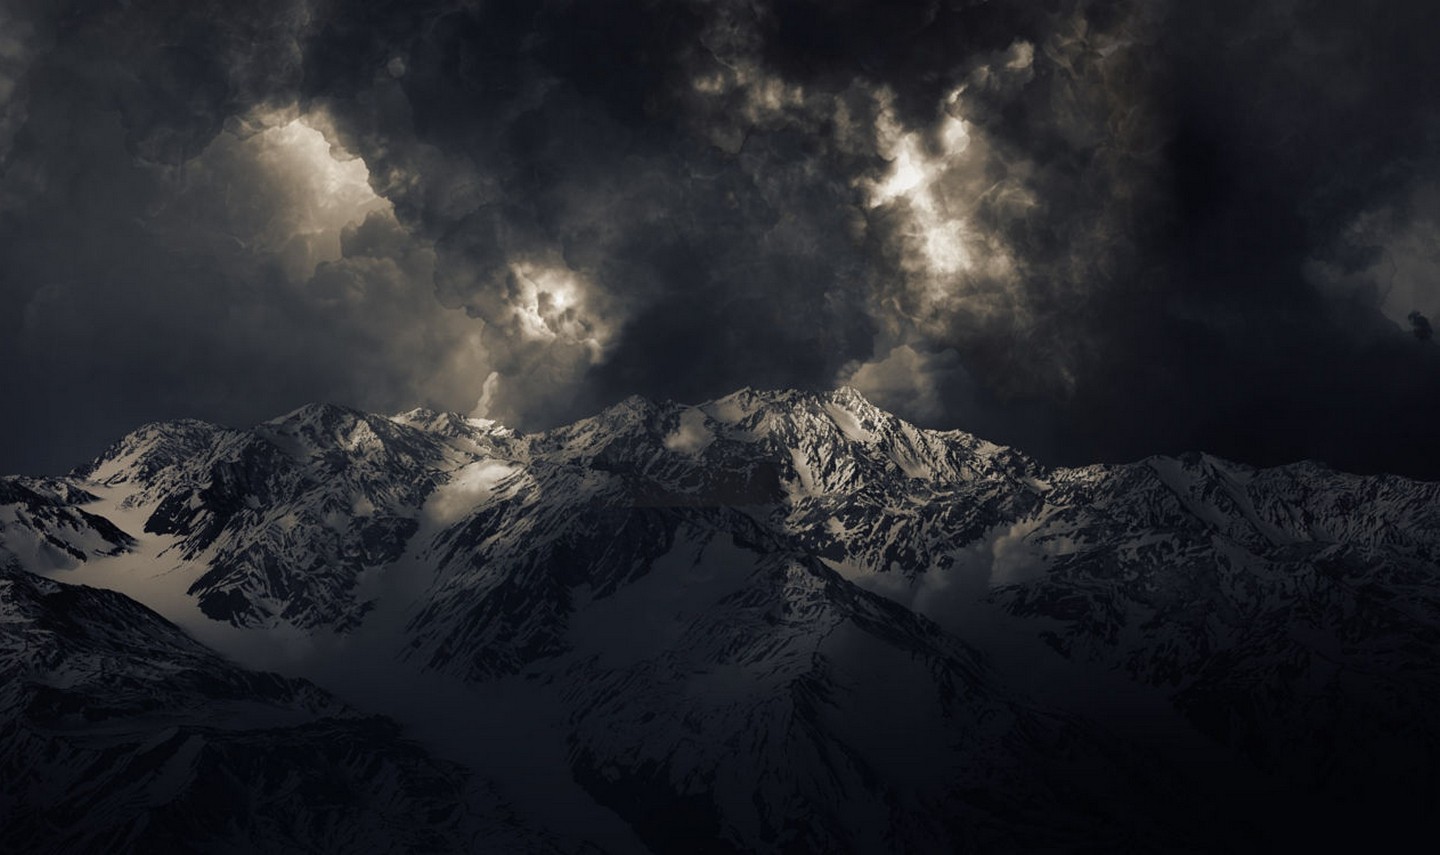 Landscape Nature Mountains Storm Dark Snowy Peak Sunlight Summit Clouds 1440x855